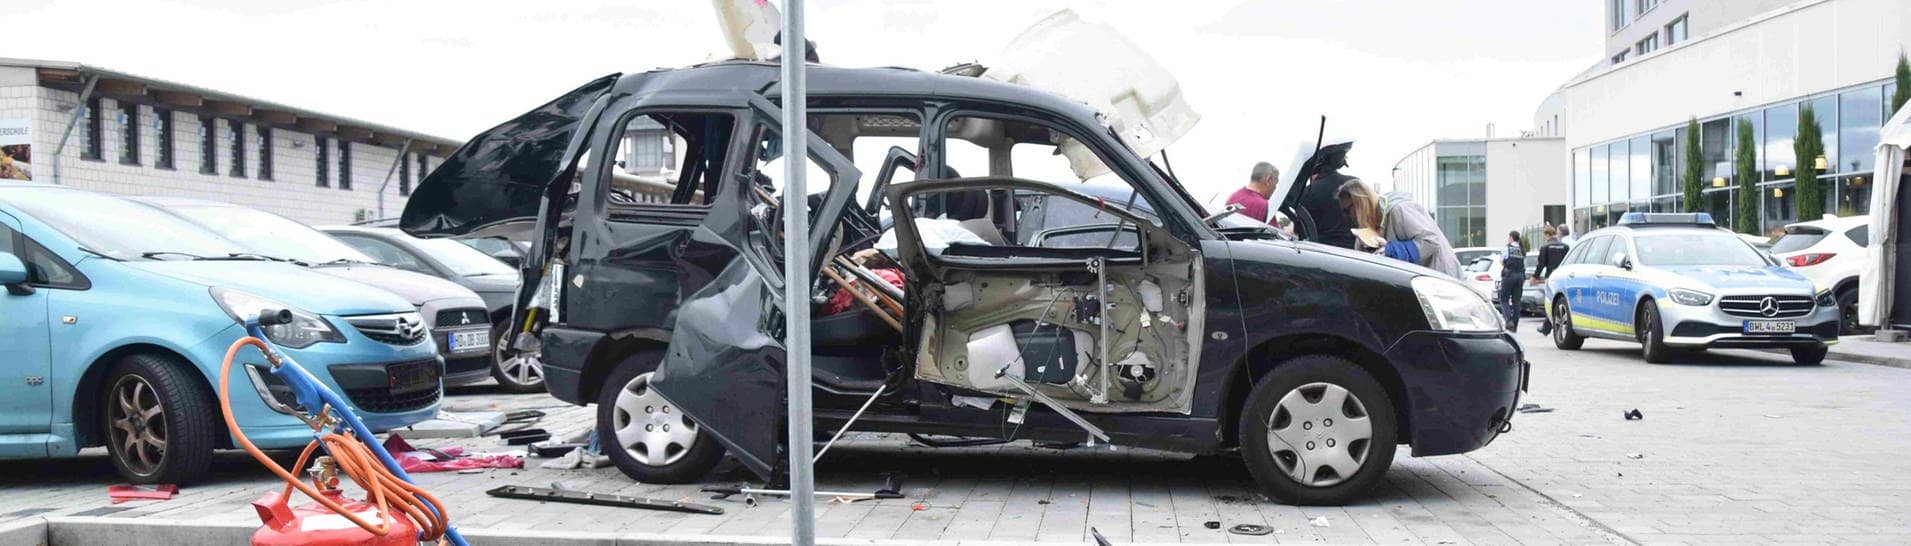 Das ist das explodierte Auto auf dem Parkplatz in Mannheim.